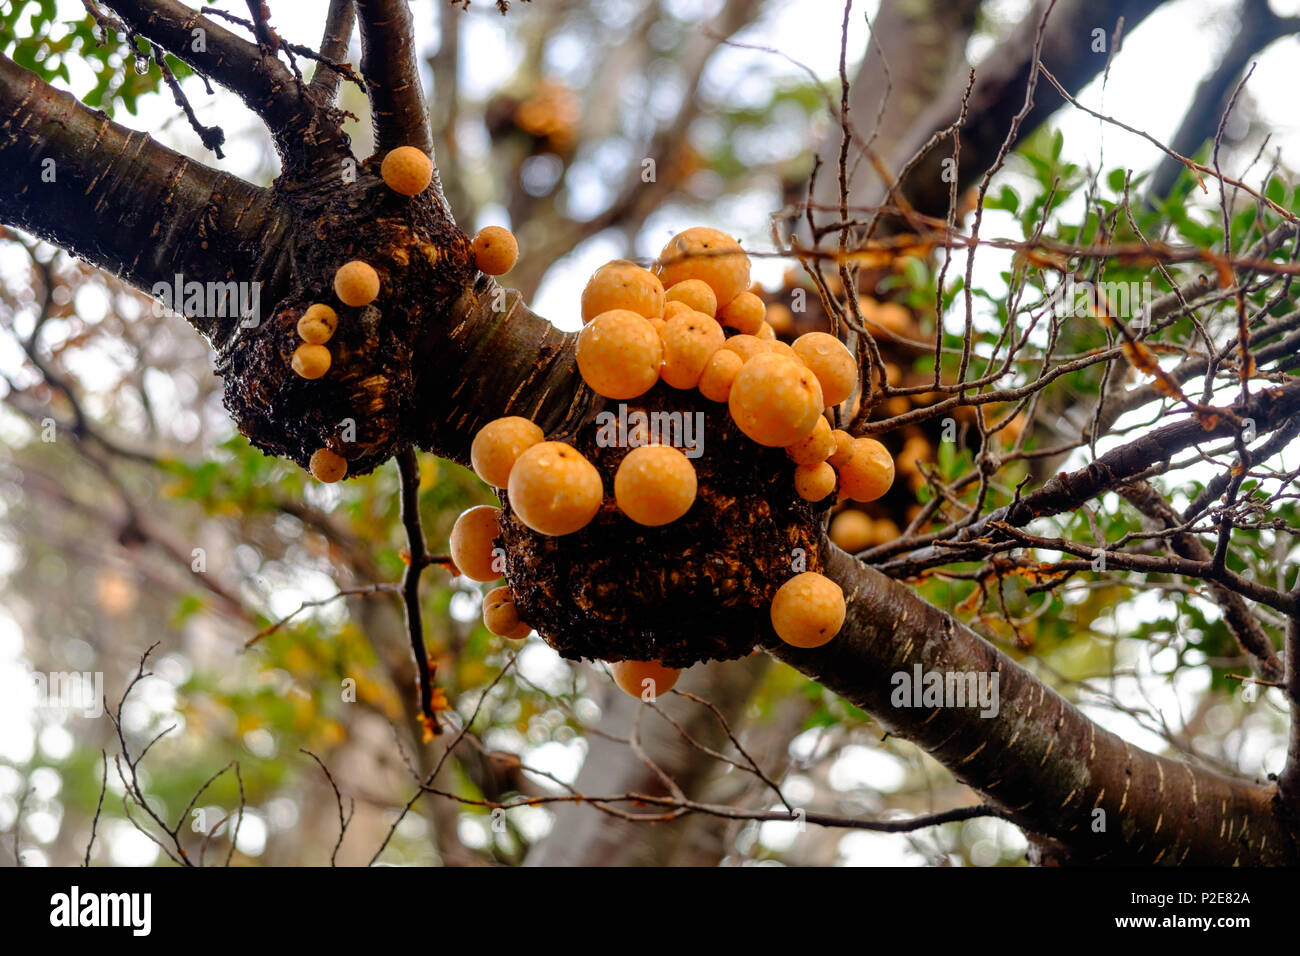 'PAN de indio' est un champignon comestible. Ce champignon orange pousse souvent sur les arbres lenga, comme ici dans le parc national de Tierra del Fuego en Argentine. Banque D'Images